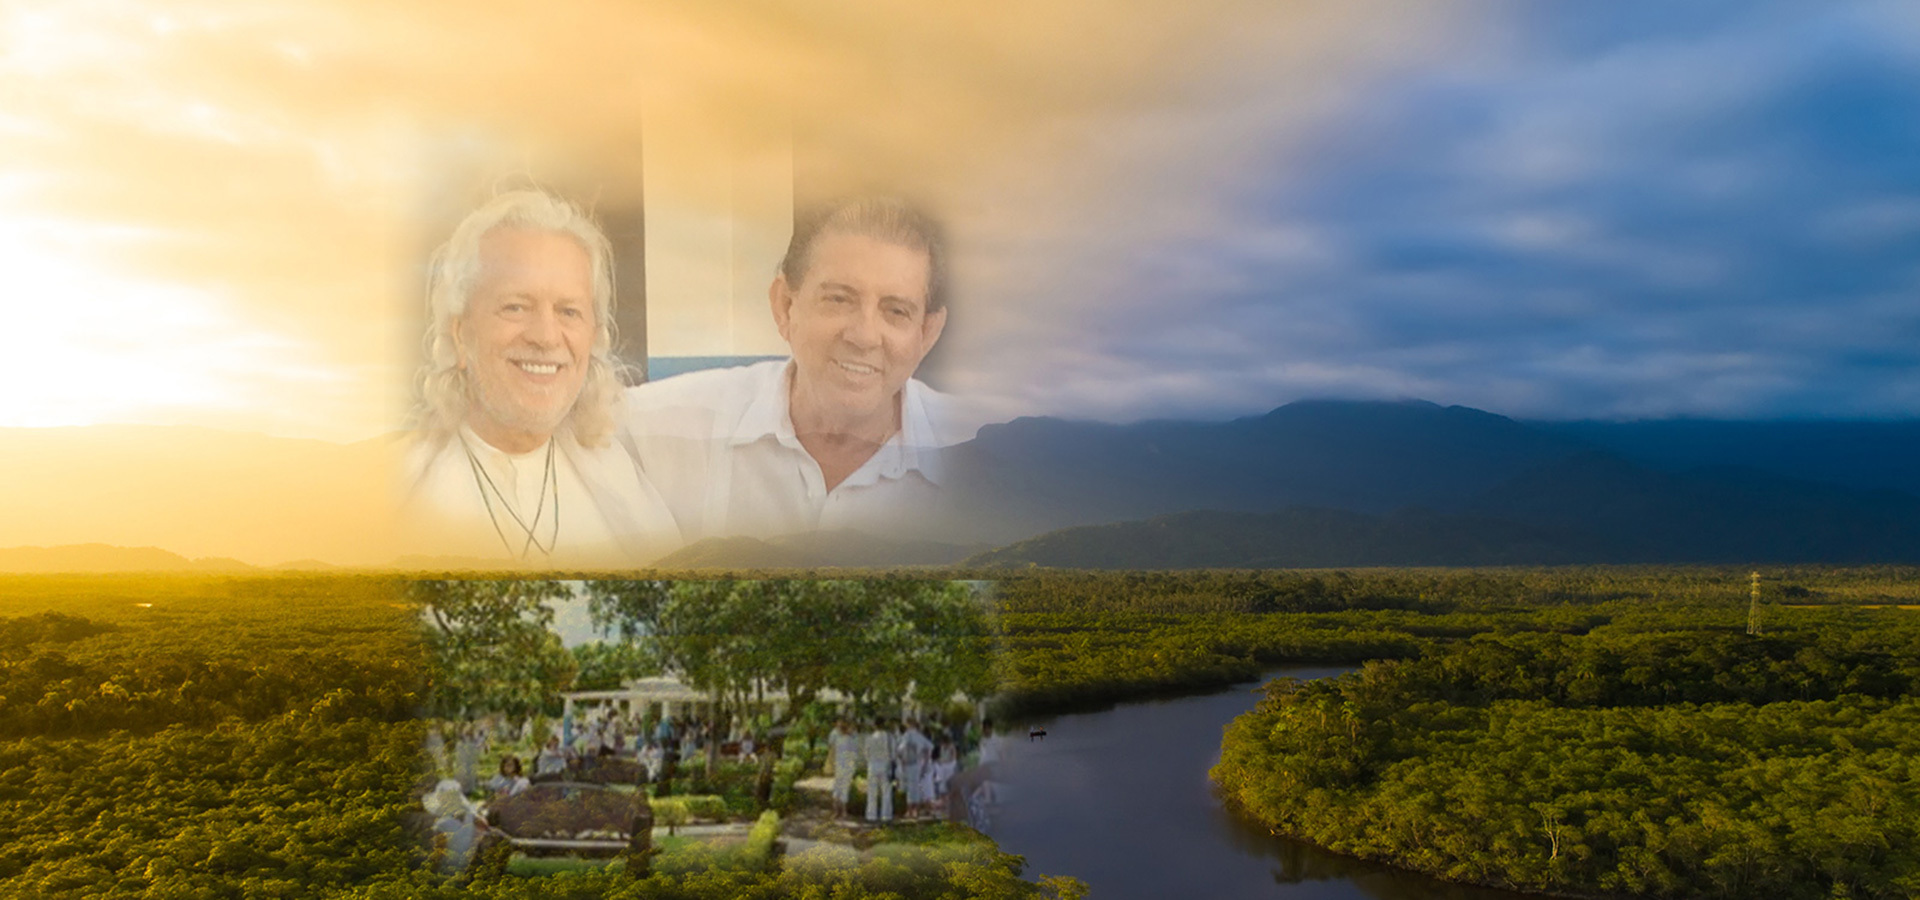 Spiritual Journey to John of God in Brazil